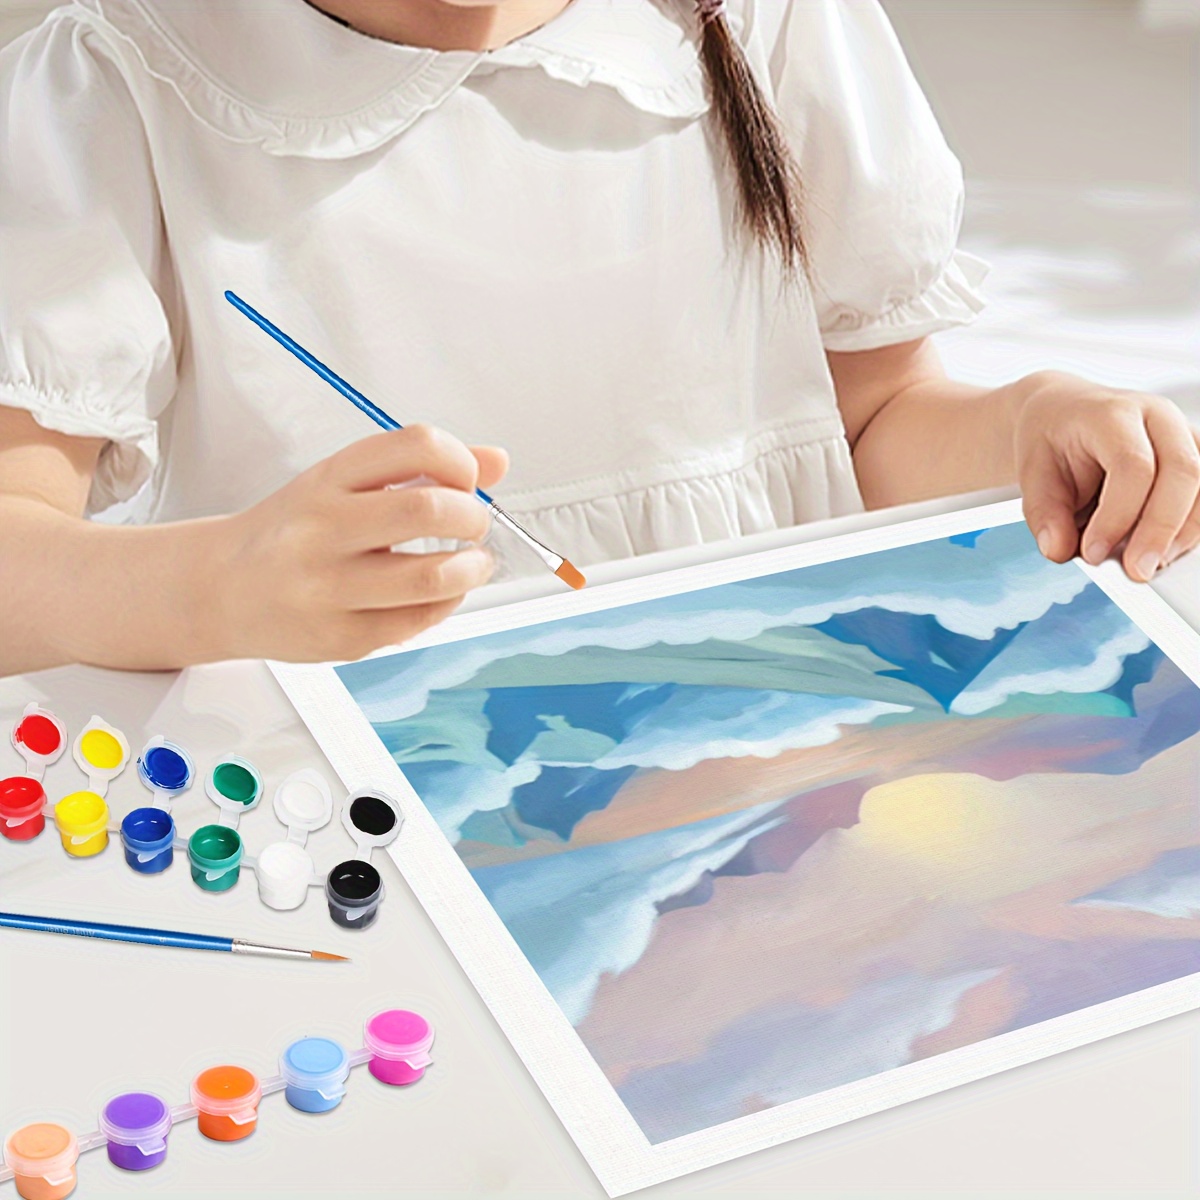 スターターキット用の数字によるDIY絵画1個、キャンバスの山と雲の絵の